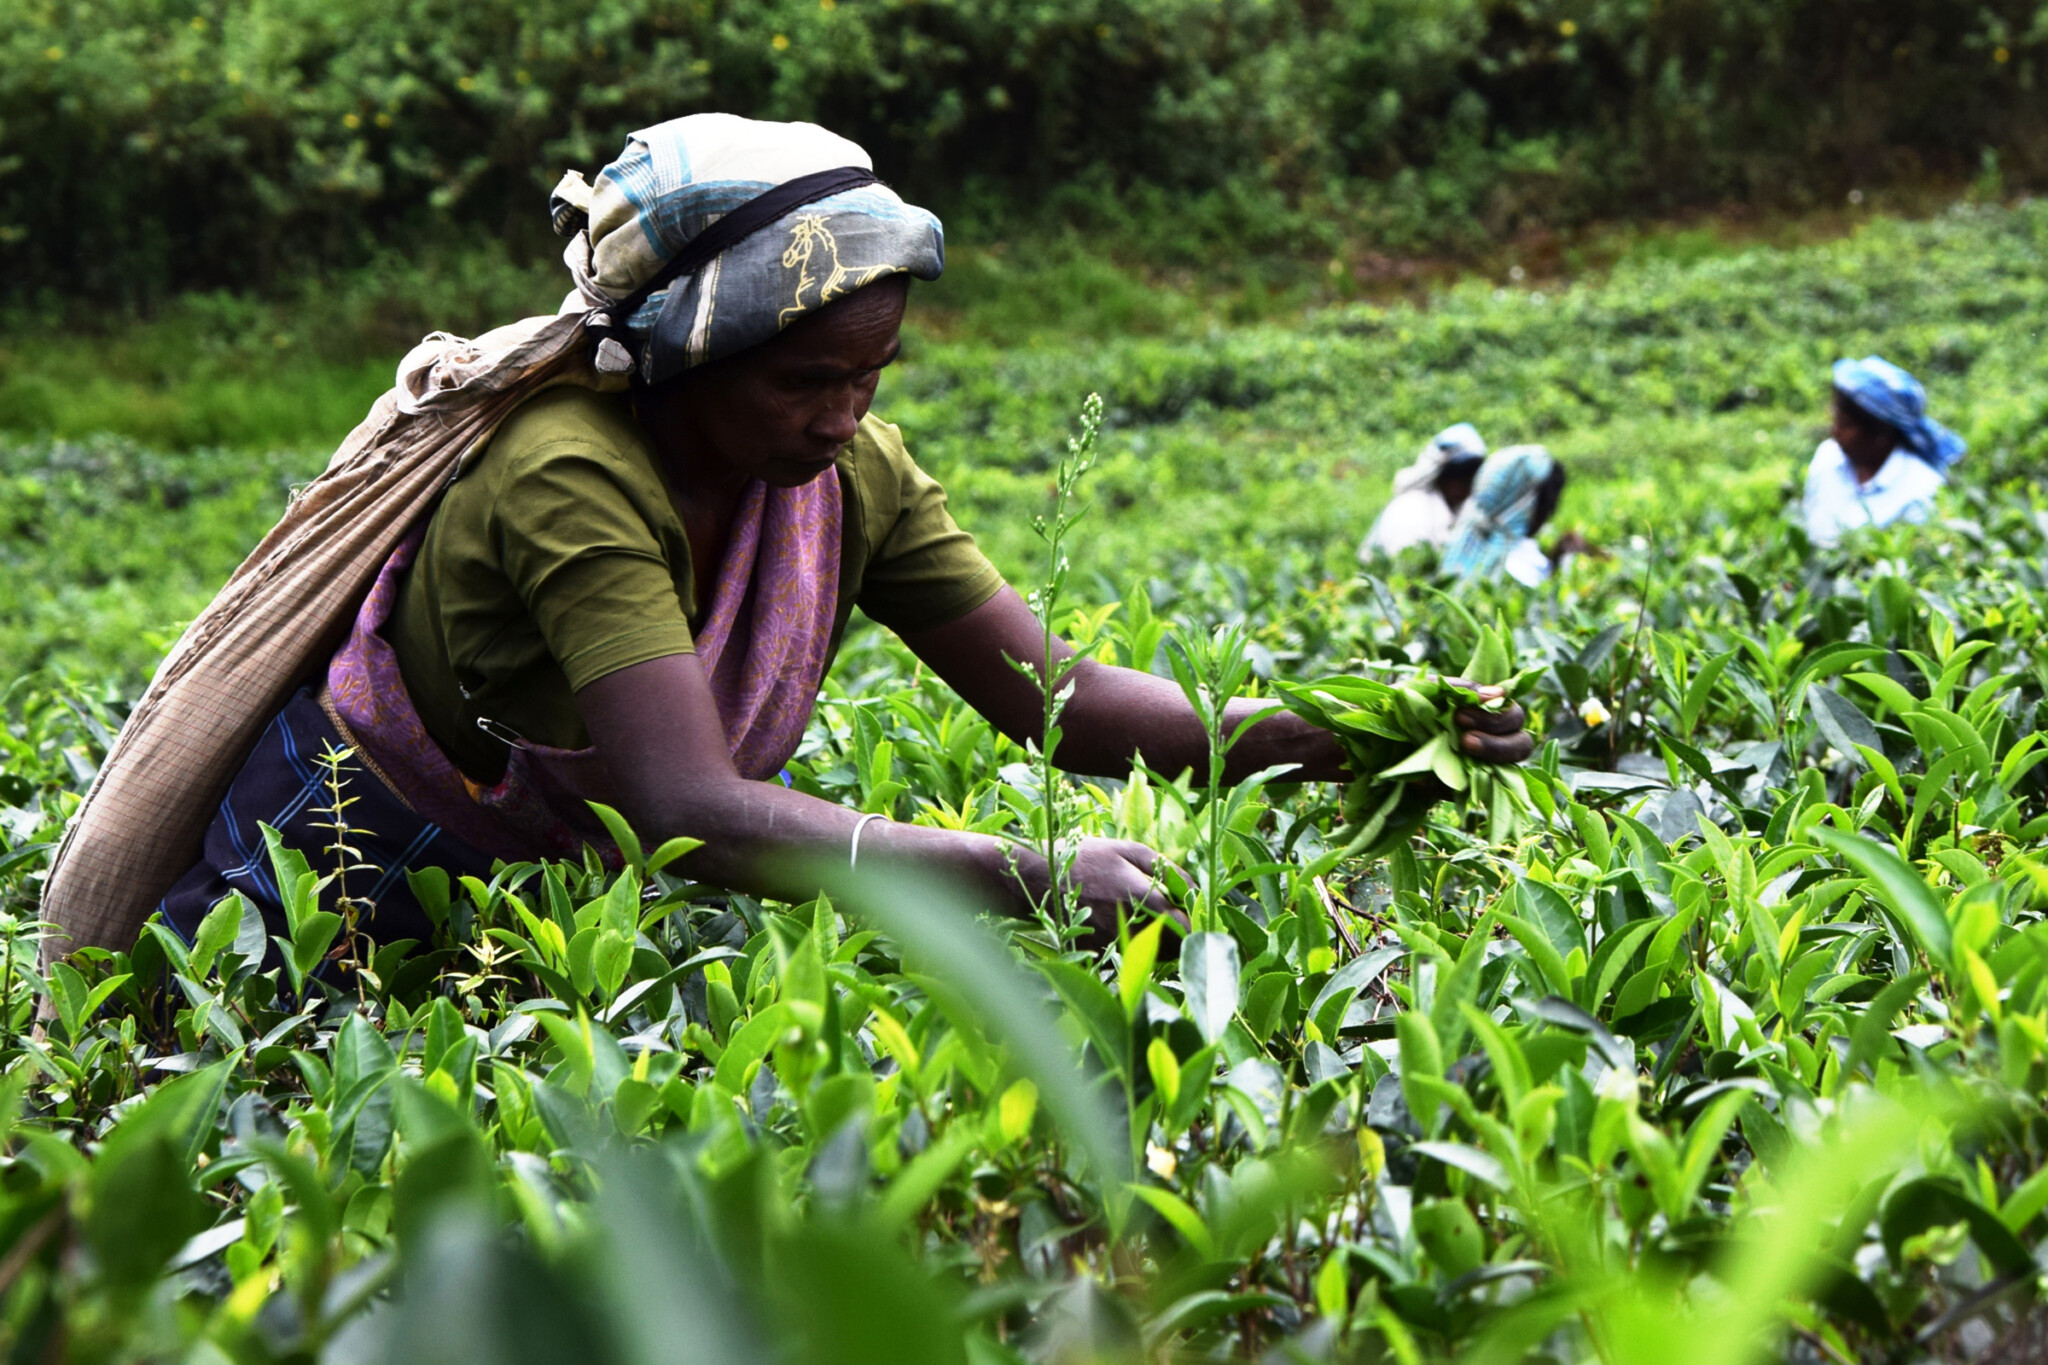 スリランカ産の茶葉は、その高低差や海からの季節風により、エリアによってそれぞれ異なる香り、味わいを持つ。